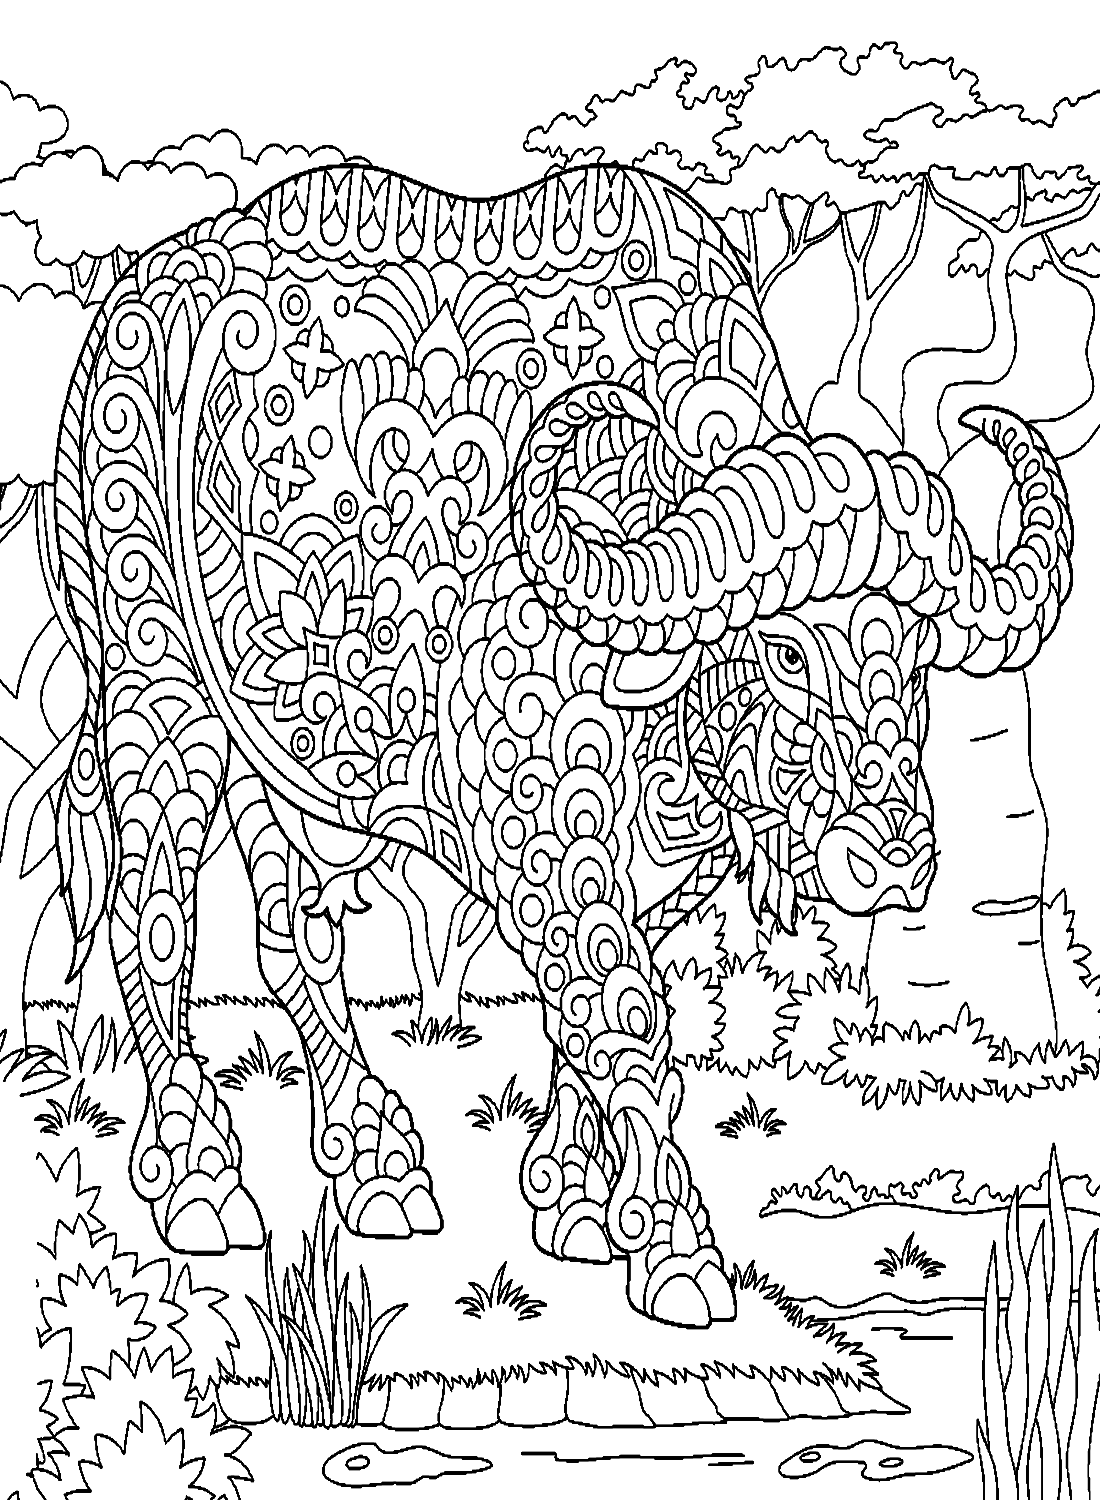 Mandala Bull na Floresta from Bull